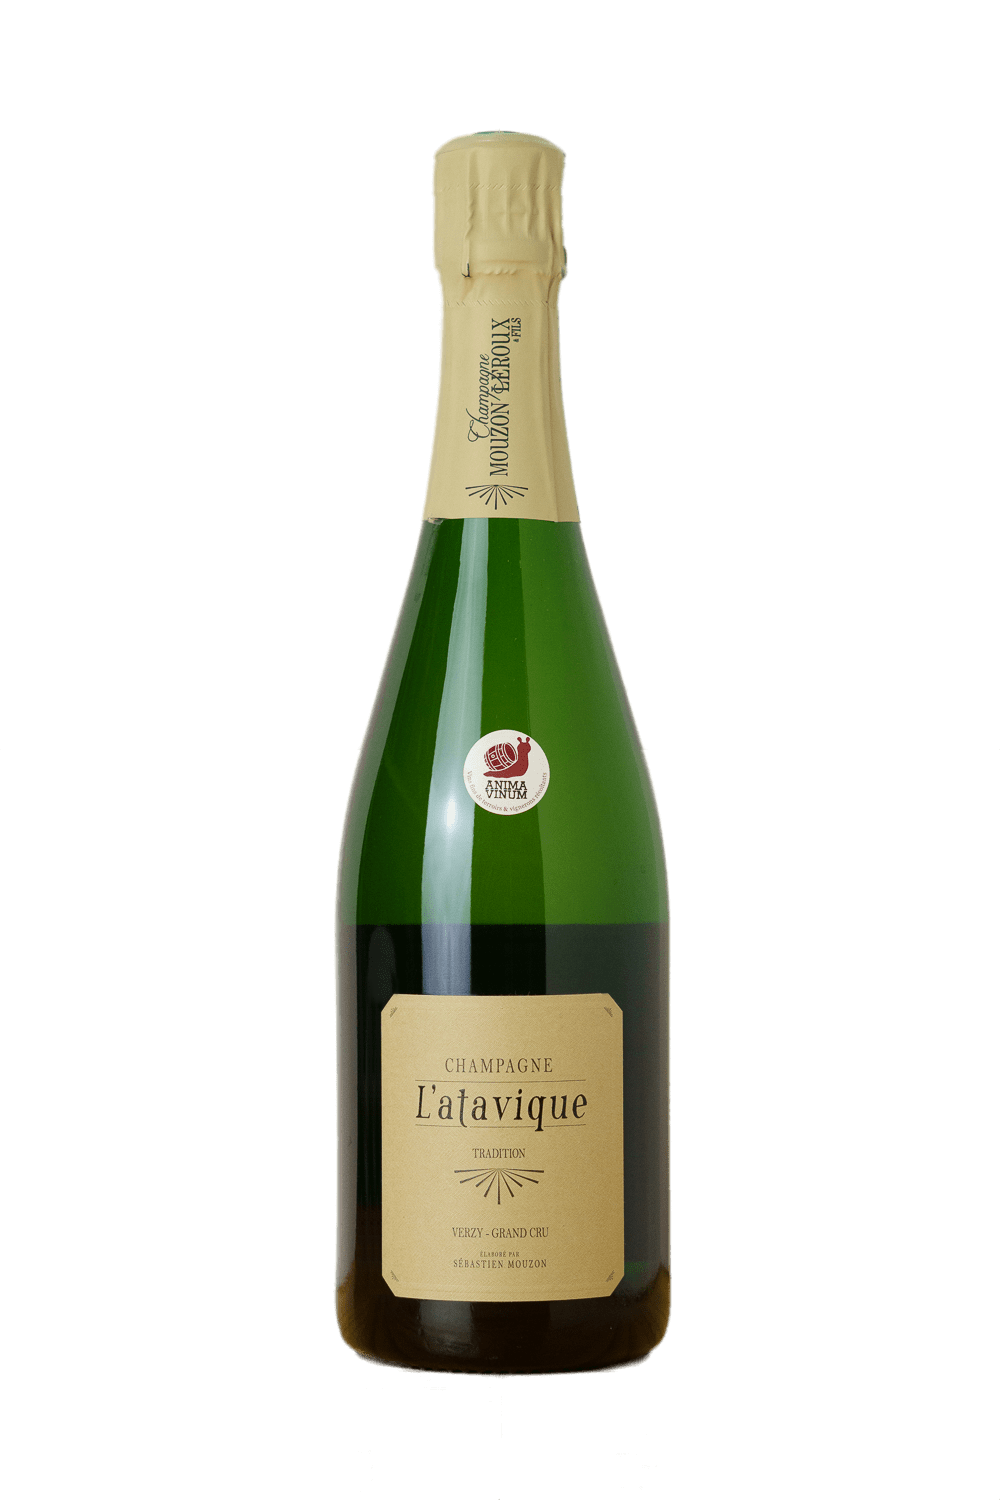 Champagne Verzy Grand Cru L'Atavique